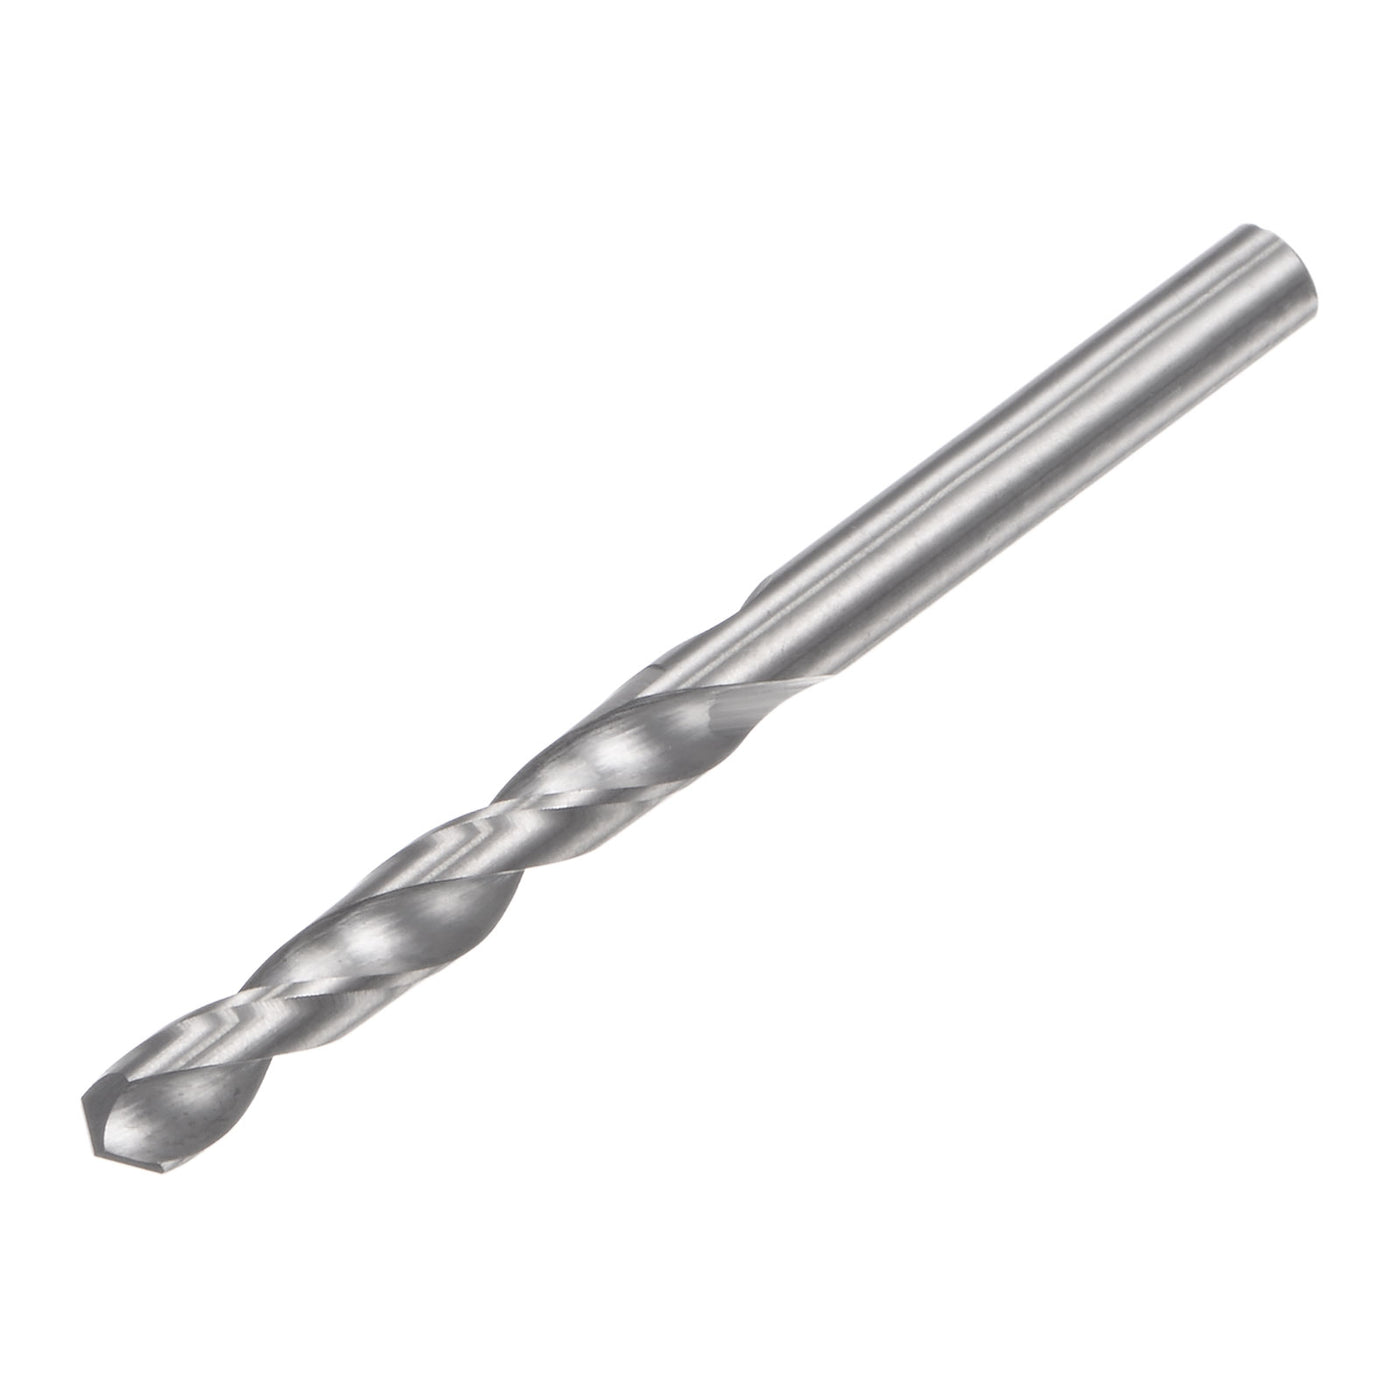 uxcell Uxcell 3.3mm C2/K20 Tungsten Carbide Straight Shank Spiral Flutes Twist Drill Bit